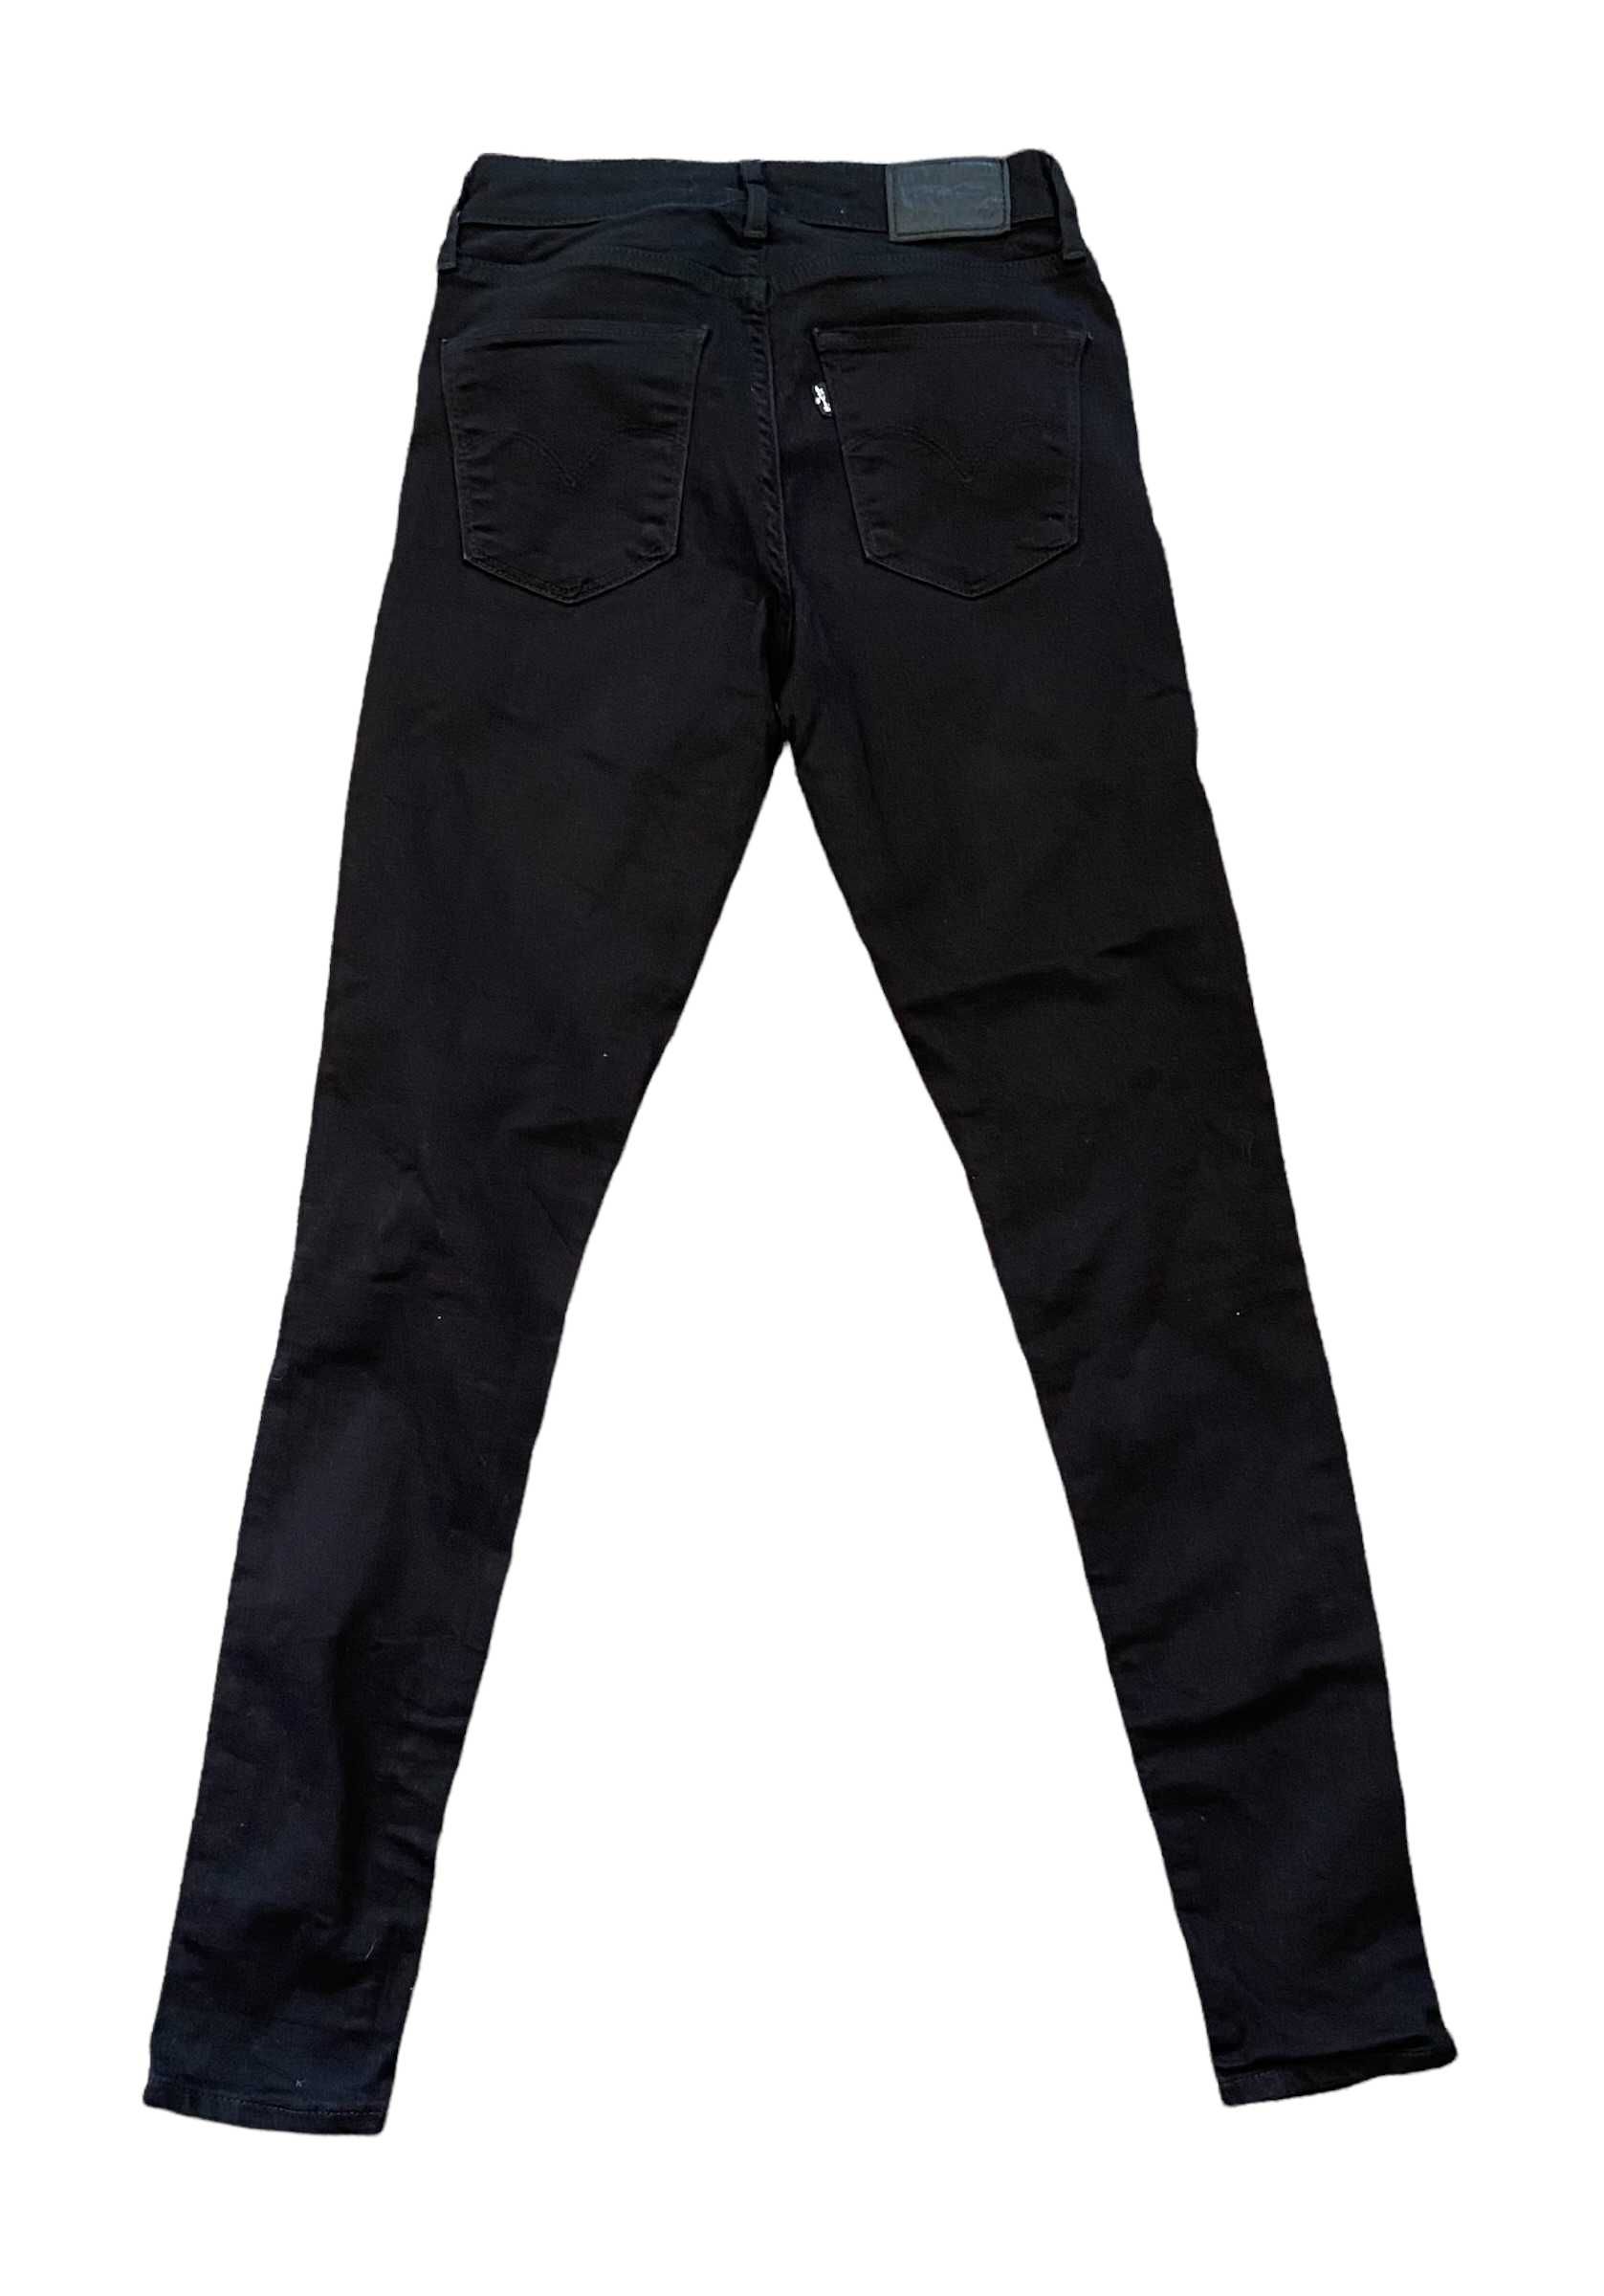 spodnie Levi's 721 High Rise Skinny, rozmiar W24/L32